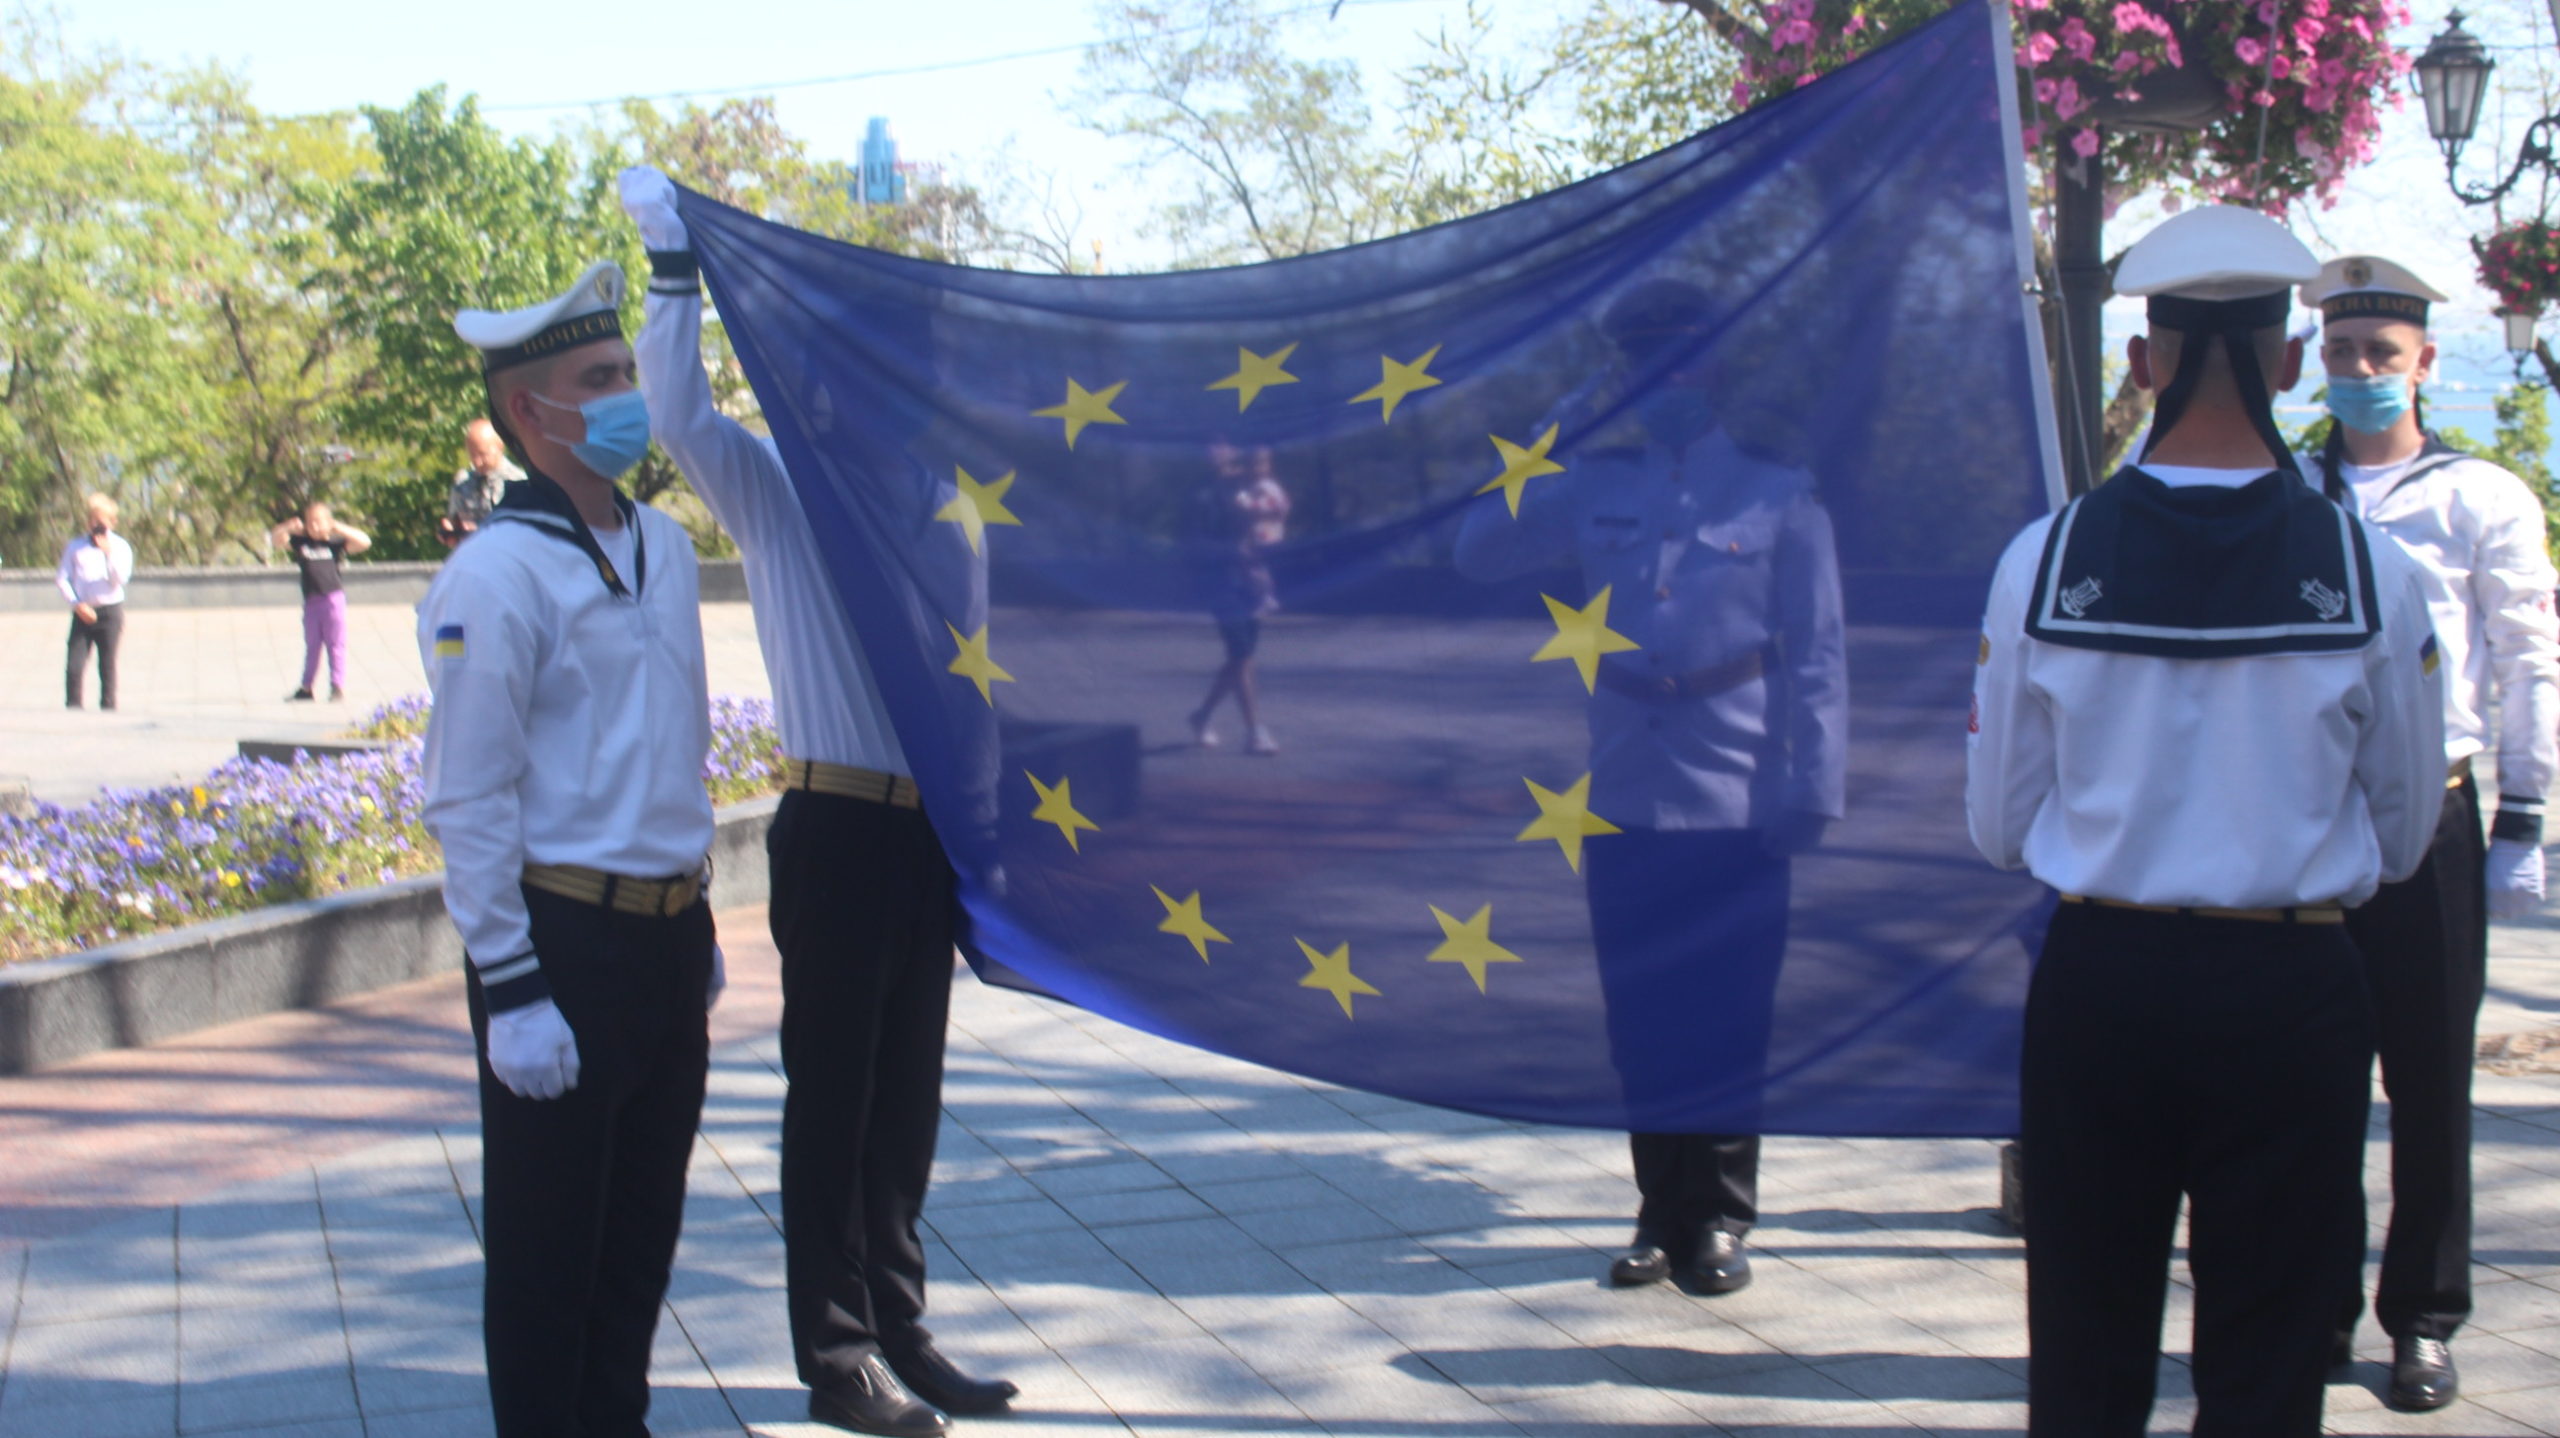 Одесса флаг Евросоюза. В Одессе подняли флаг ЕС. Труханов Одесса фото 9 мая. Одесса телеграмм телеграм